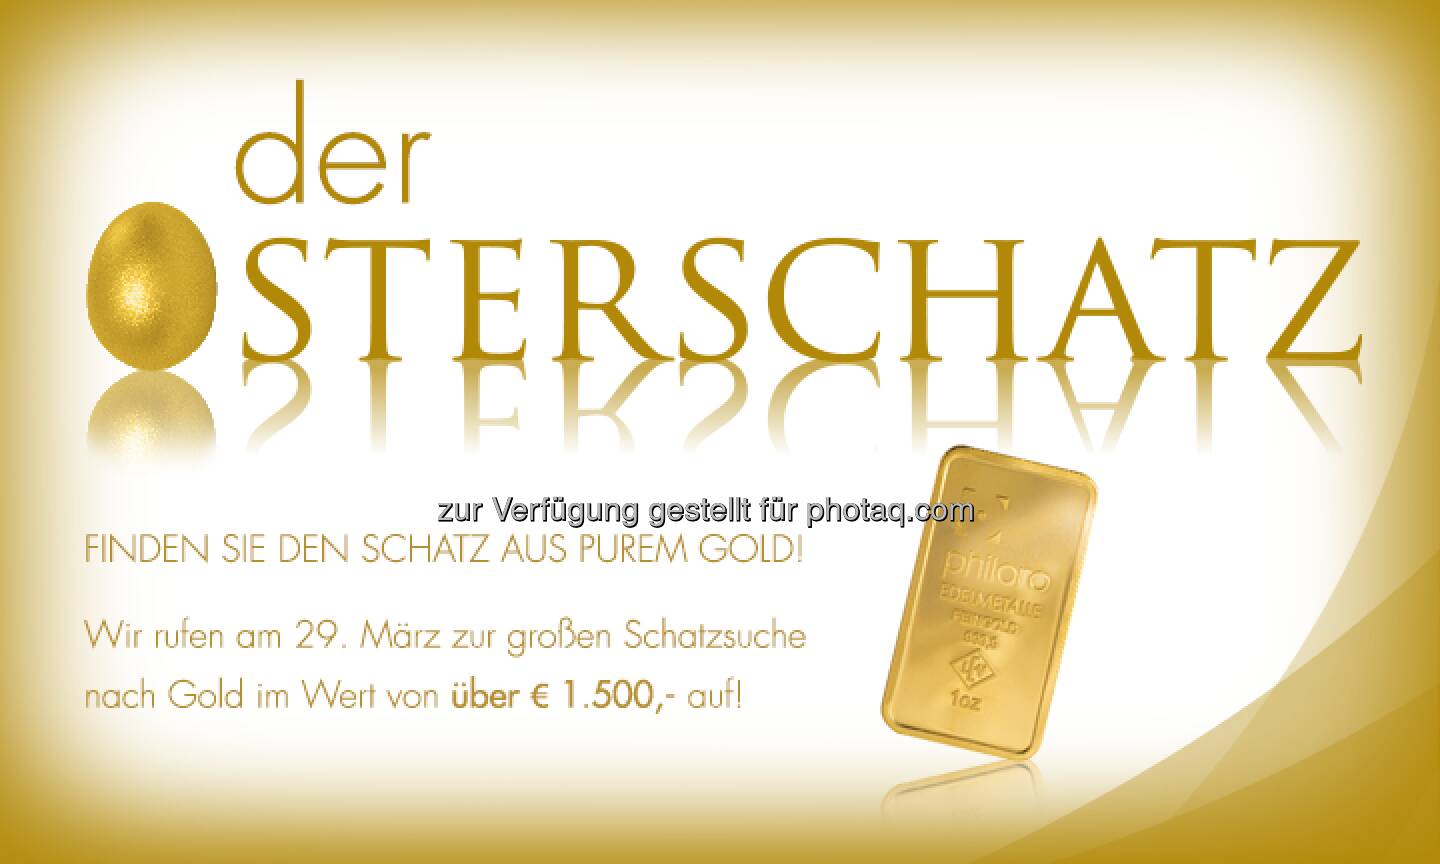 Osterschatz-Suche by Philoro, es geht um einen Schatz aus purem Gold -  https://www.philoro.at/index.php/gewinnspiel-der-osterschatz-2013.html